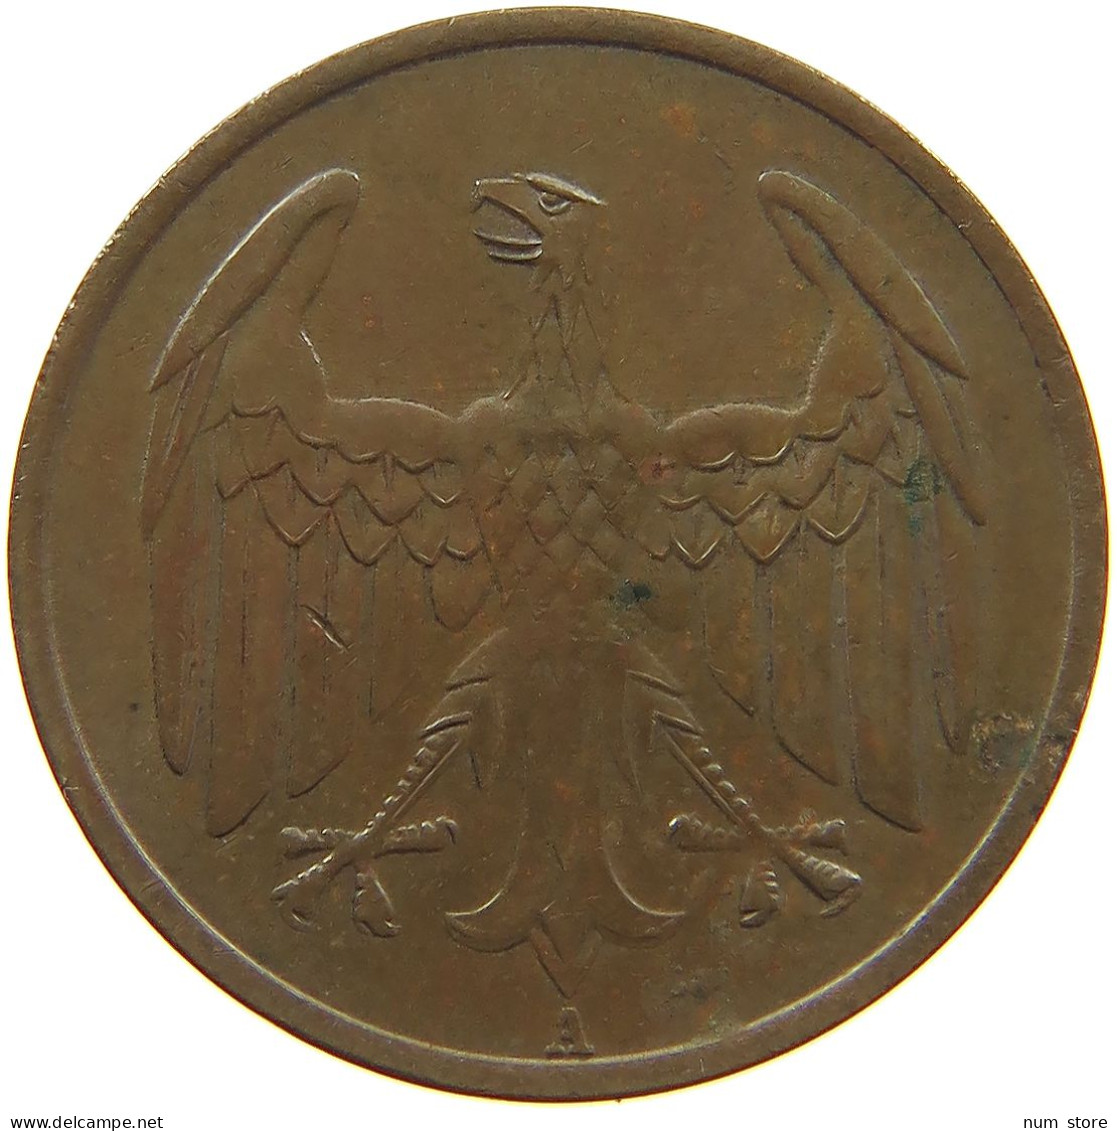 WEIMARER REPUBLIK 4 PFENNIG 1932 A  #c020 0345 - 4 Reichspfennig